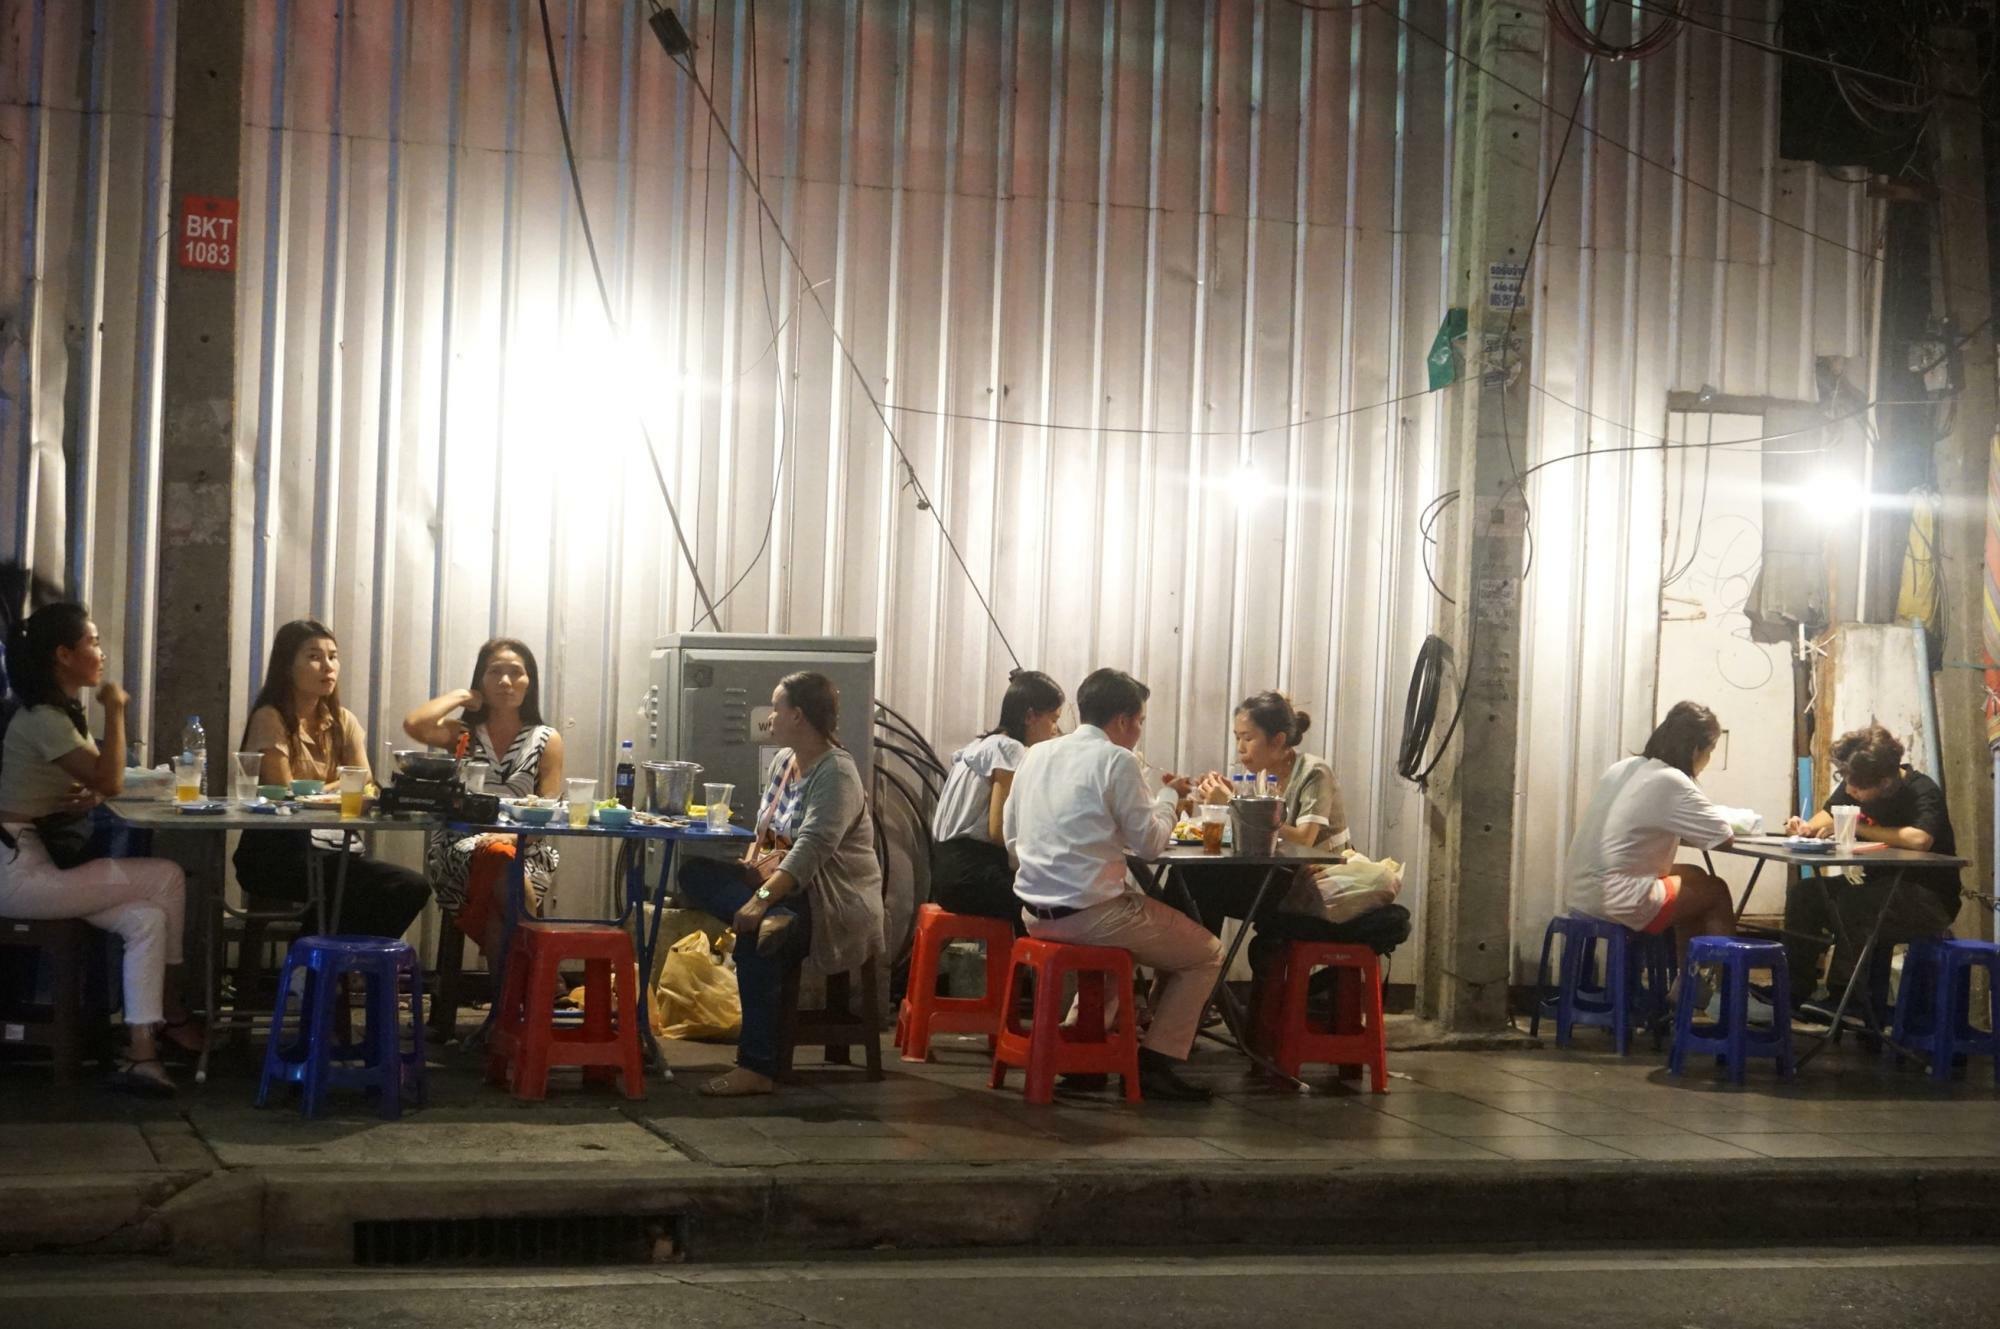 バンコクの屋台ではお酒を販売していないところが多い。とはいえ、飲食店では隣のお店からビールだけ出前、のようなユルさを目撃することがけっこう多い